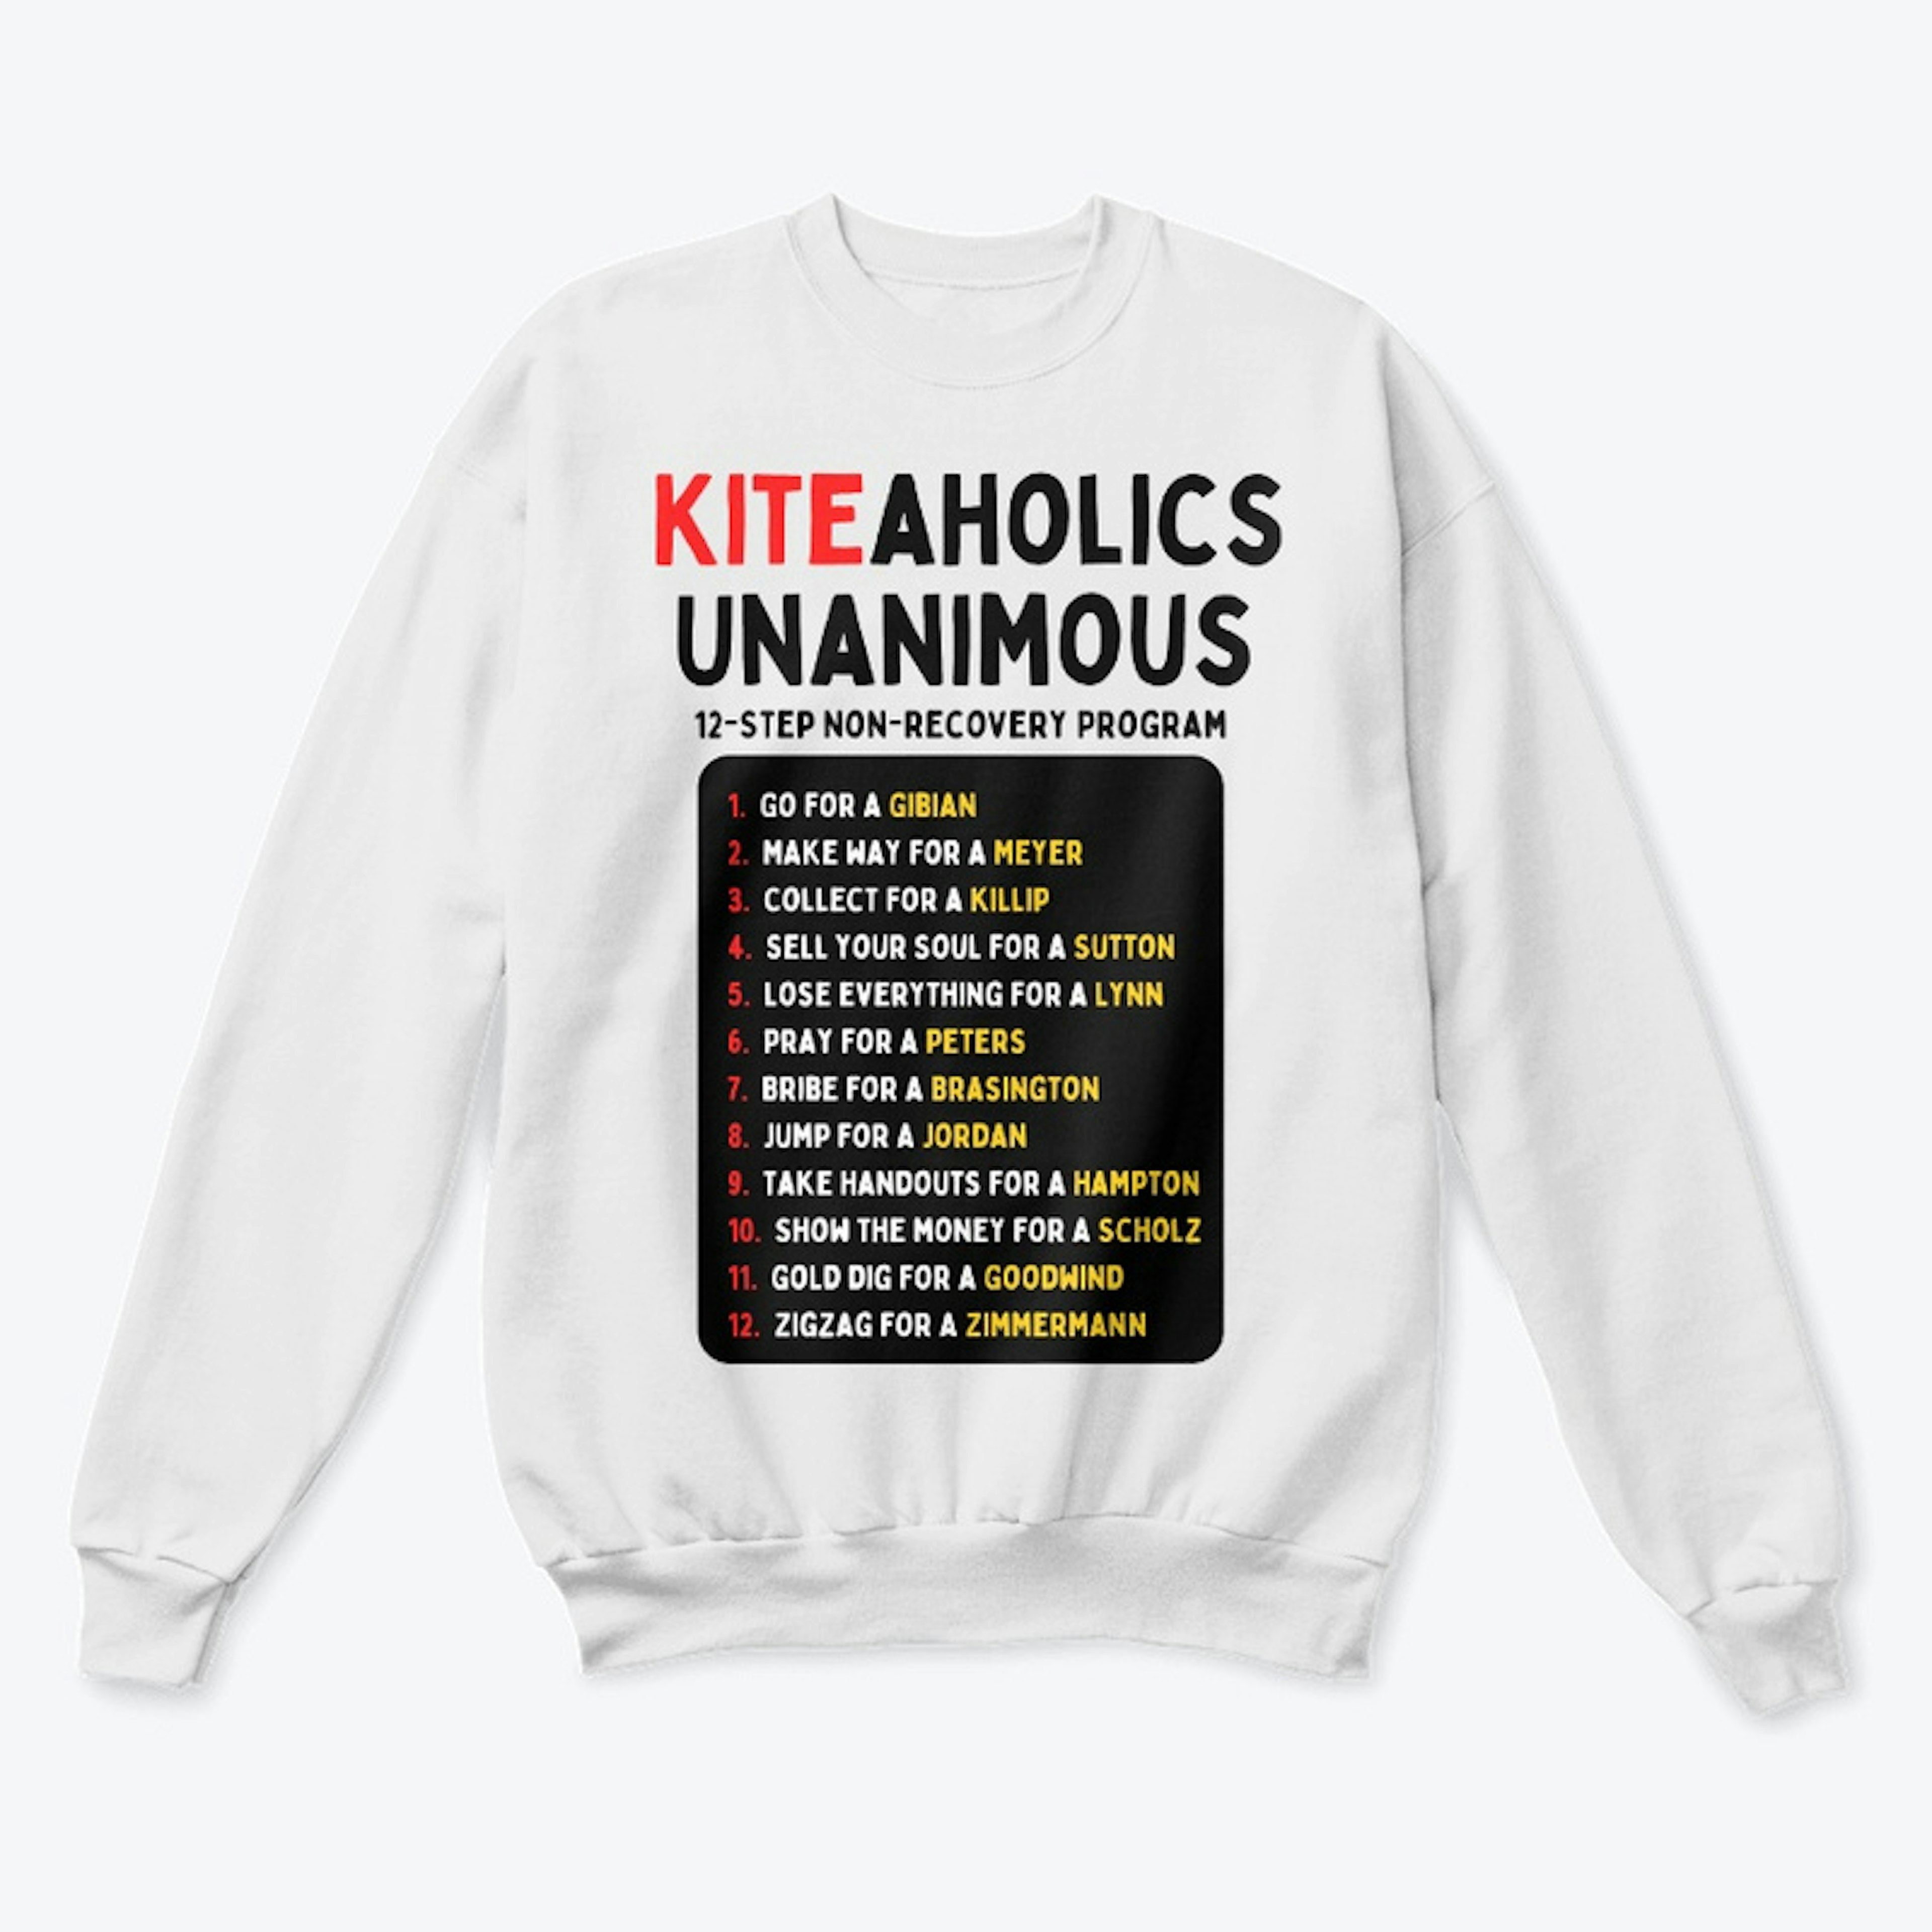 Kiteacholics Unite